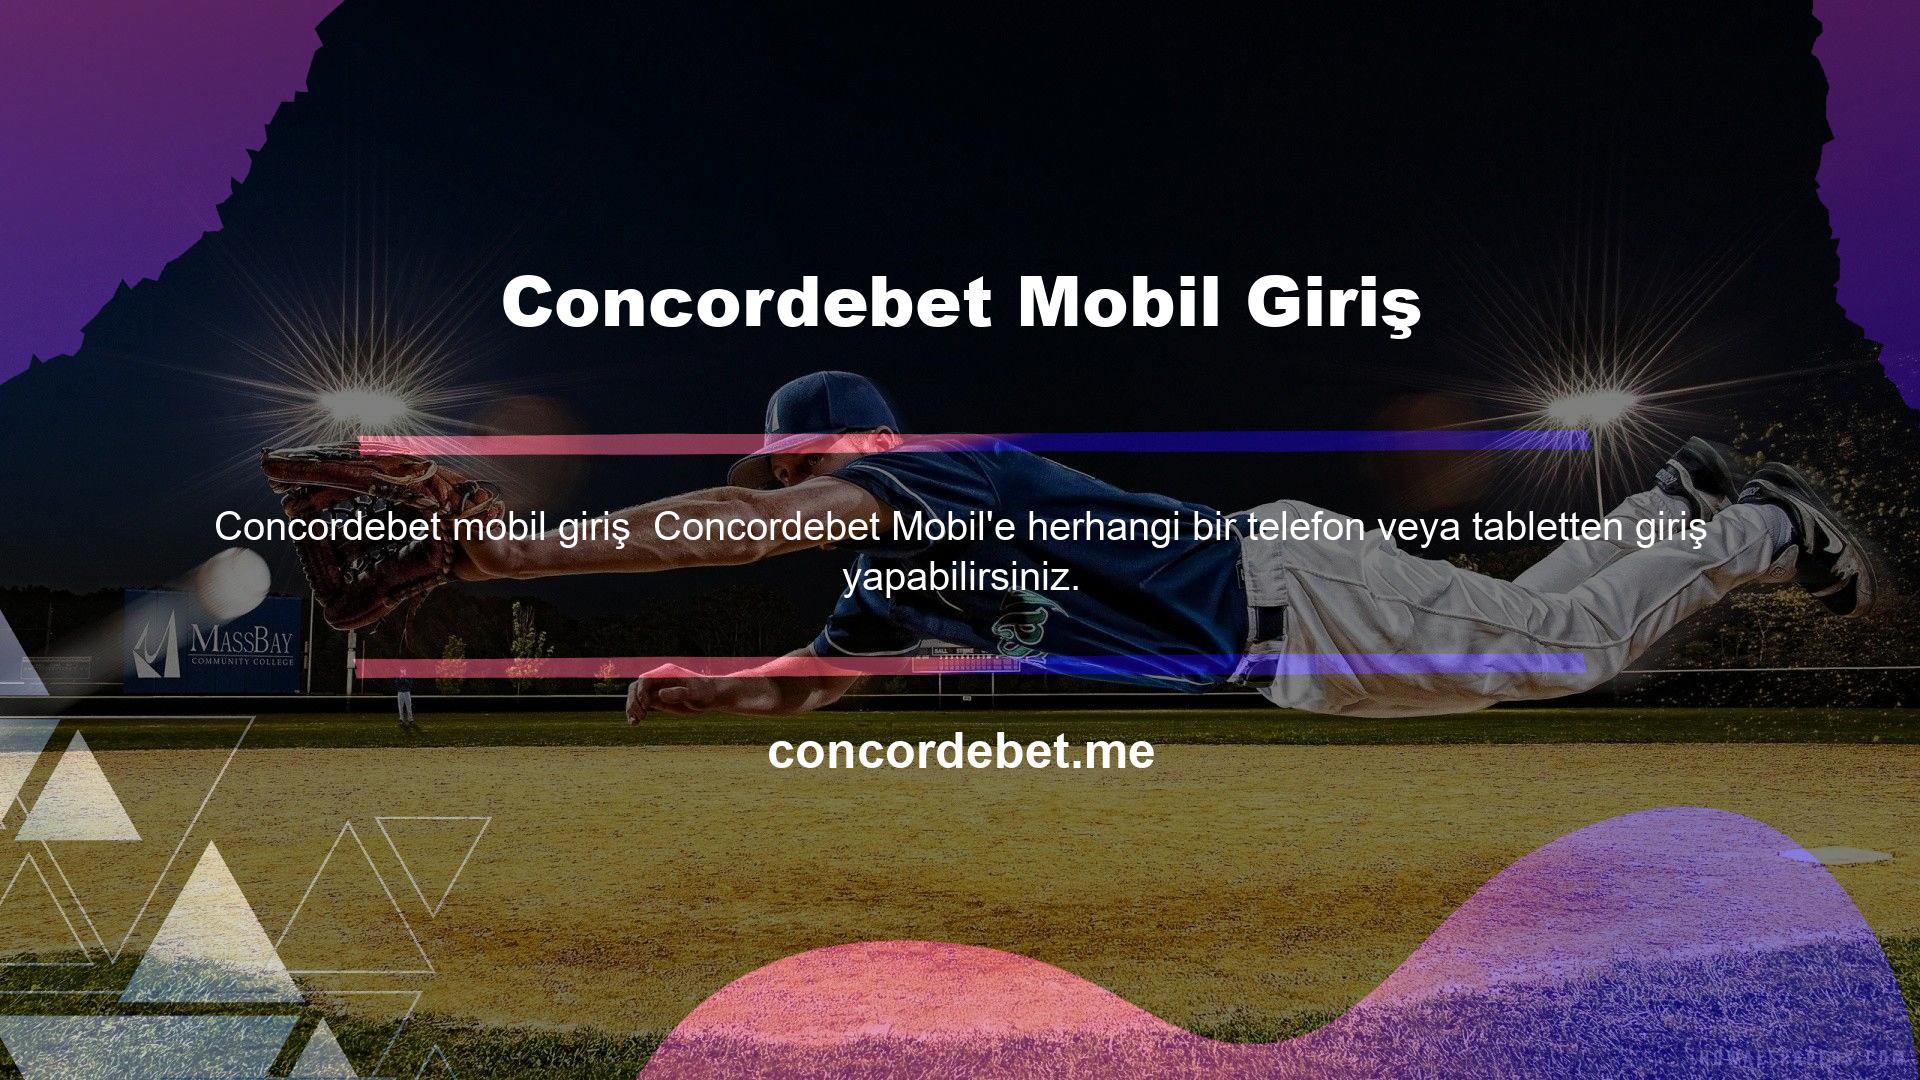 Concordebet mobil web sitesi Android cihazlar için kullanılabilir